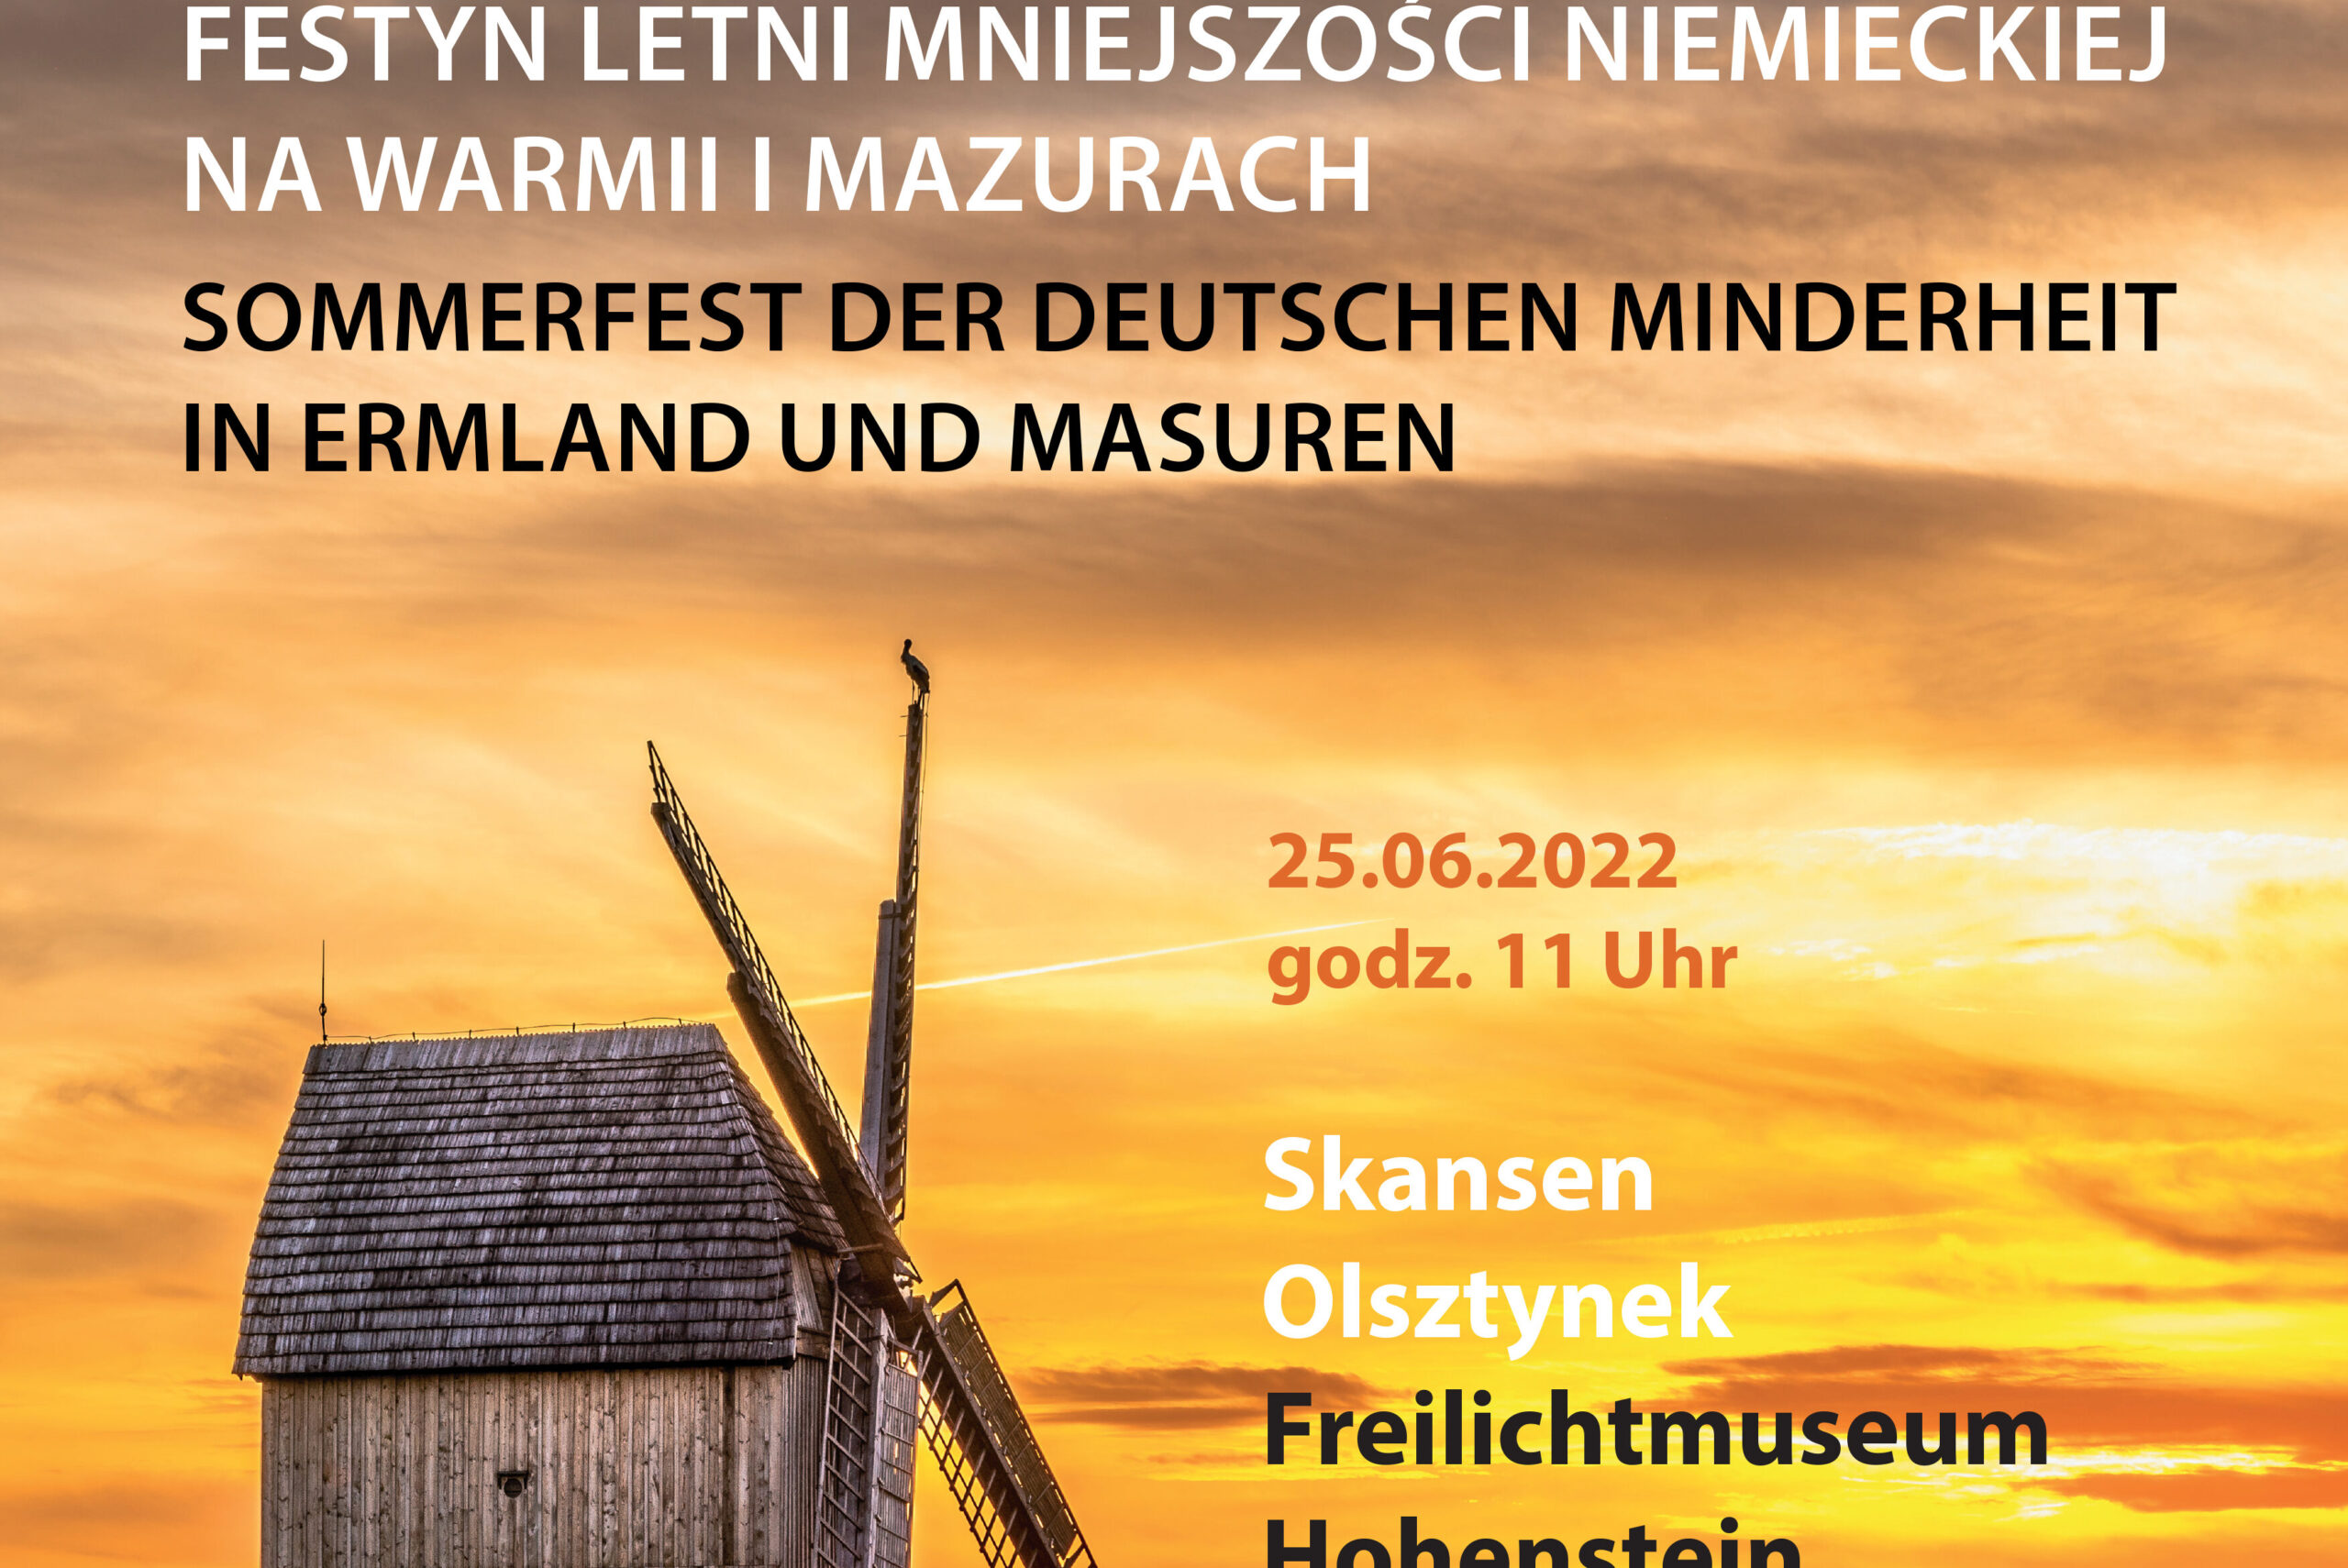 Letni Festyn Mniejszości Niemieckiej na Warmii i Mazurach